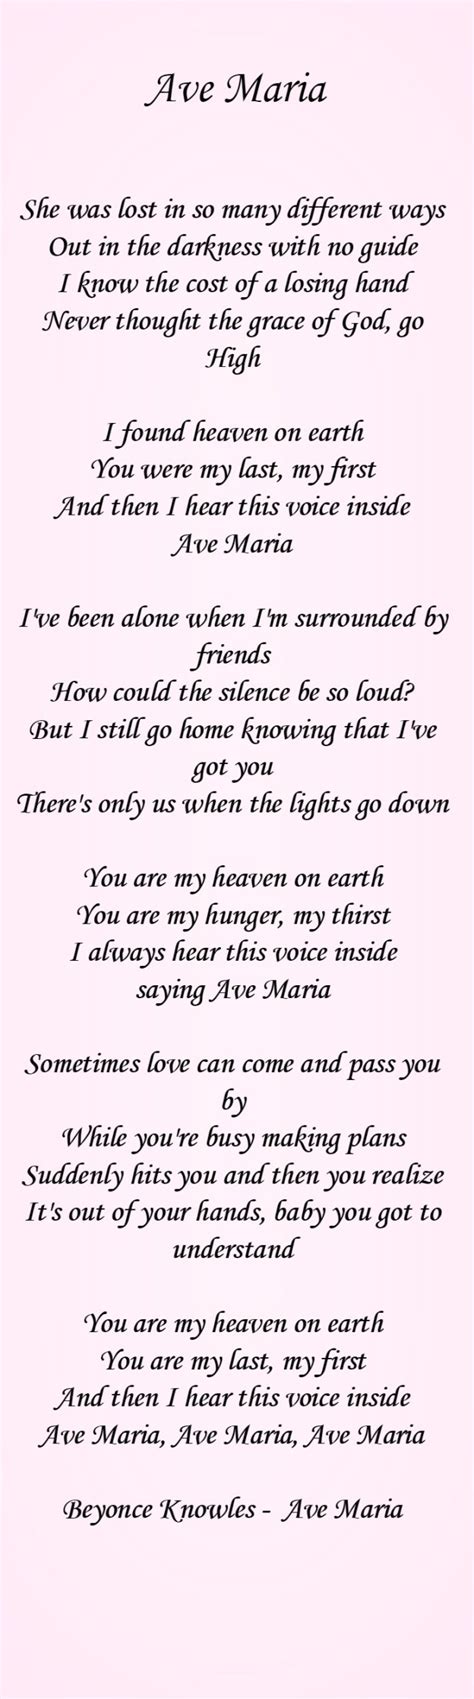 Ave Maria Lyrics for Pinterest https://www.youtube.com ...